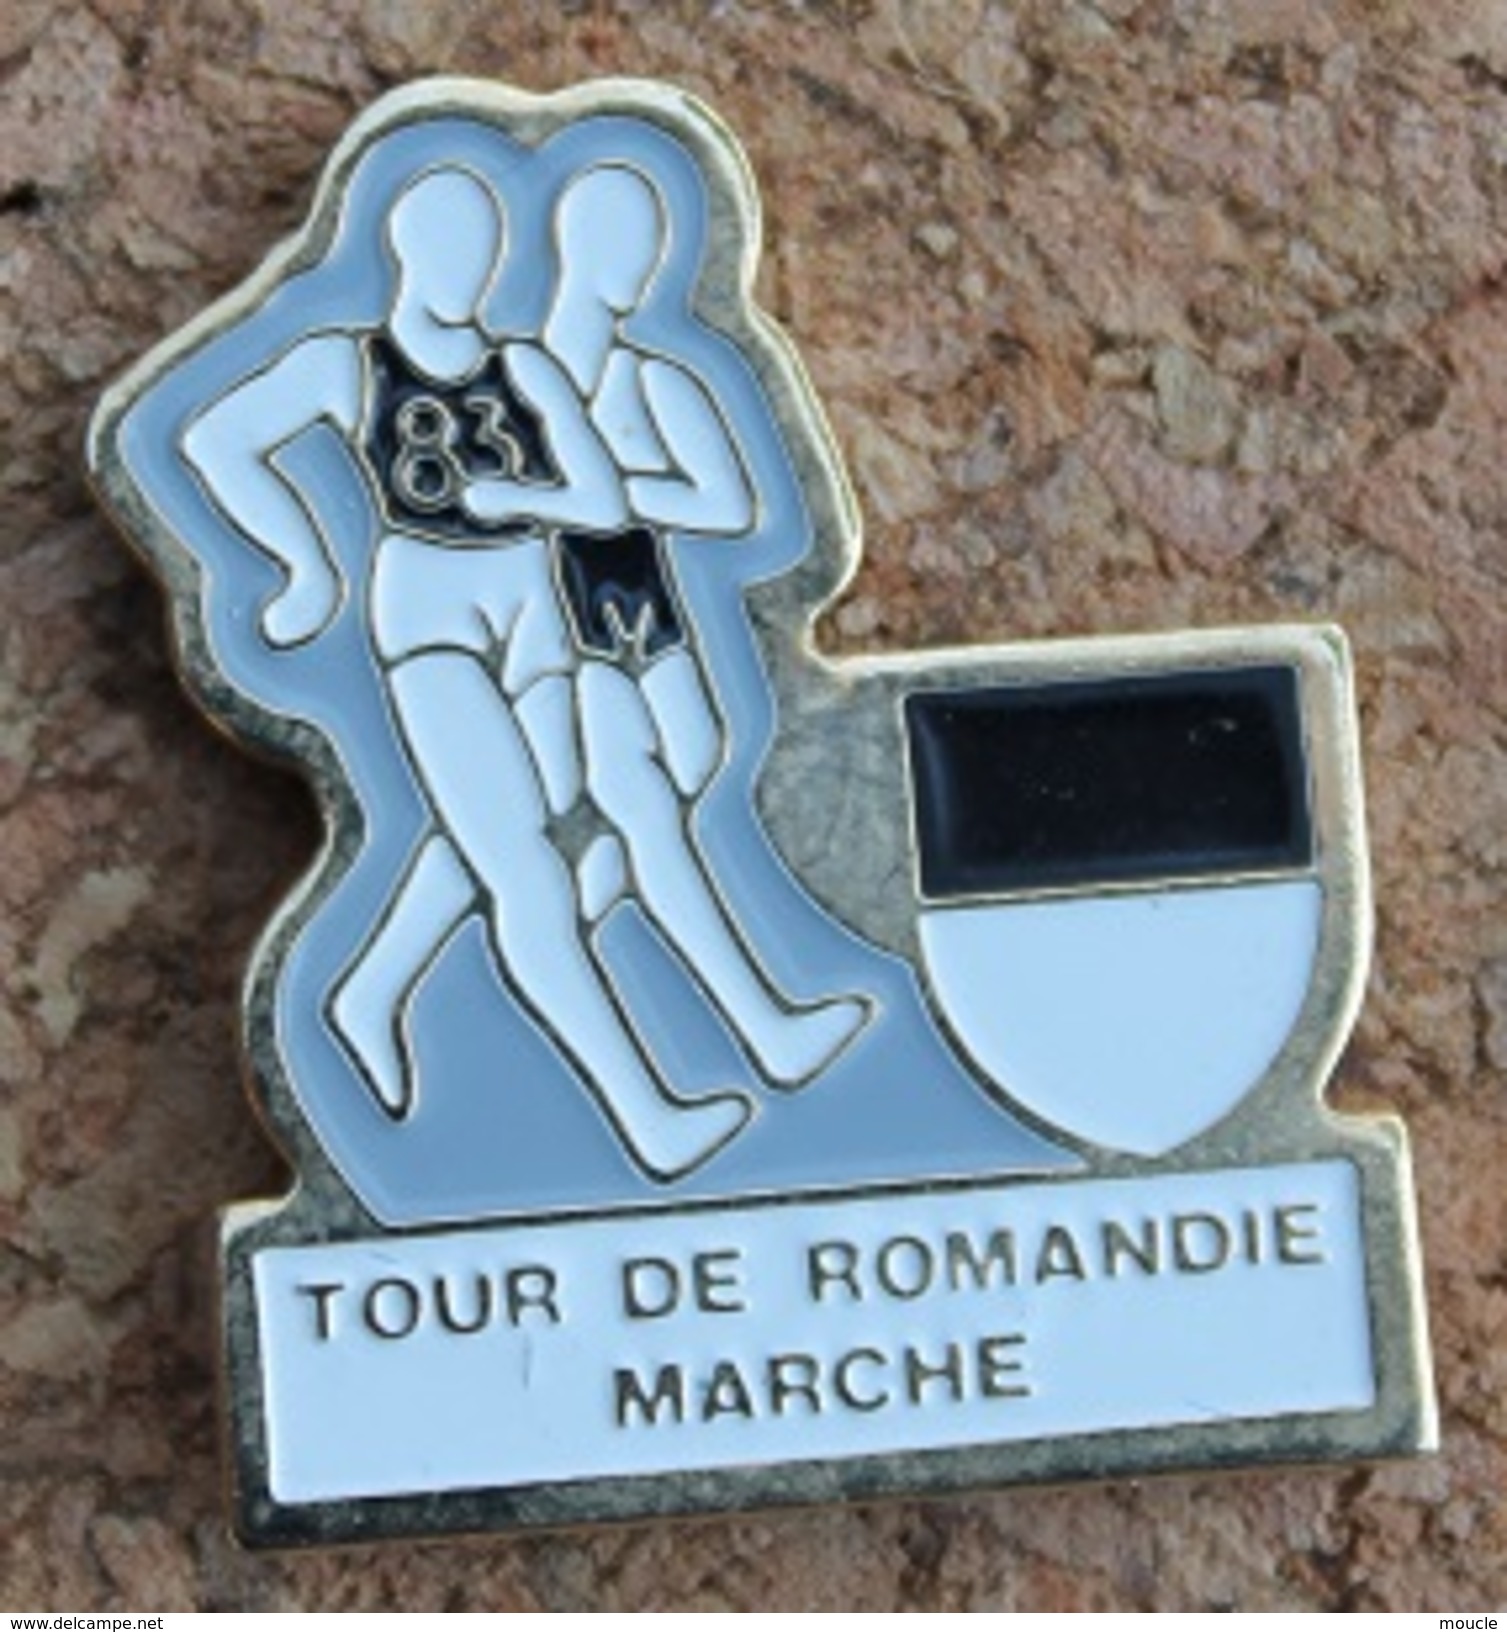 TOUR DE ROMANDIE A LA MARCHE - SUISSE - ETAPE DU CANTON DE FRIBOURG - MARCHEURS  -  SCHWEIZ - SVIZZERA - SUIZA -   (13) - Athlétisme